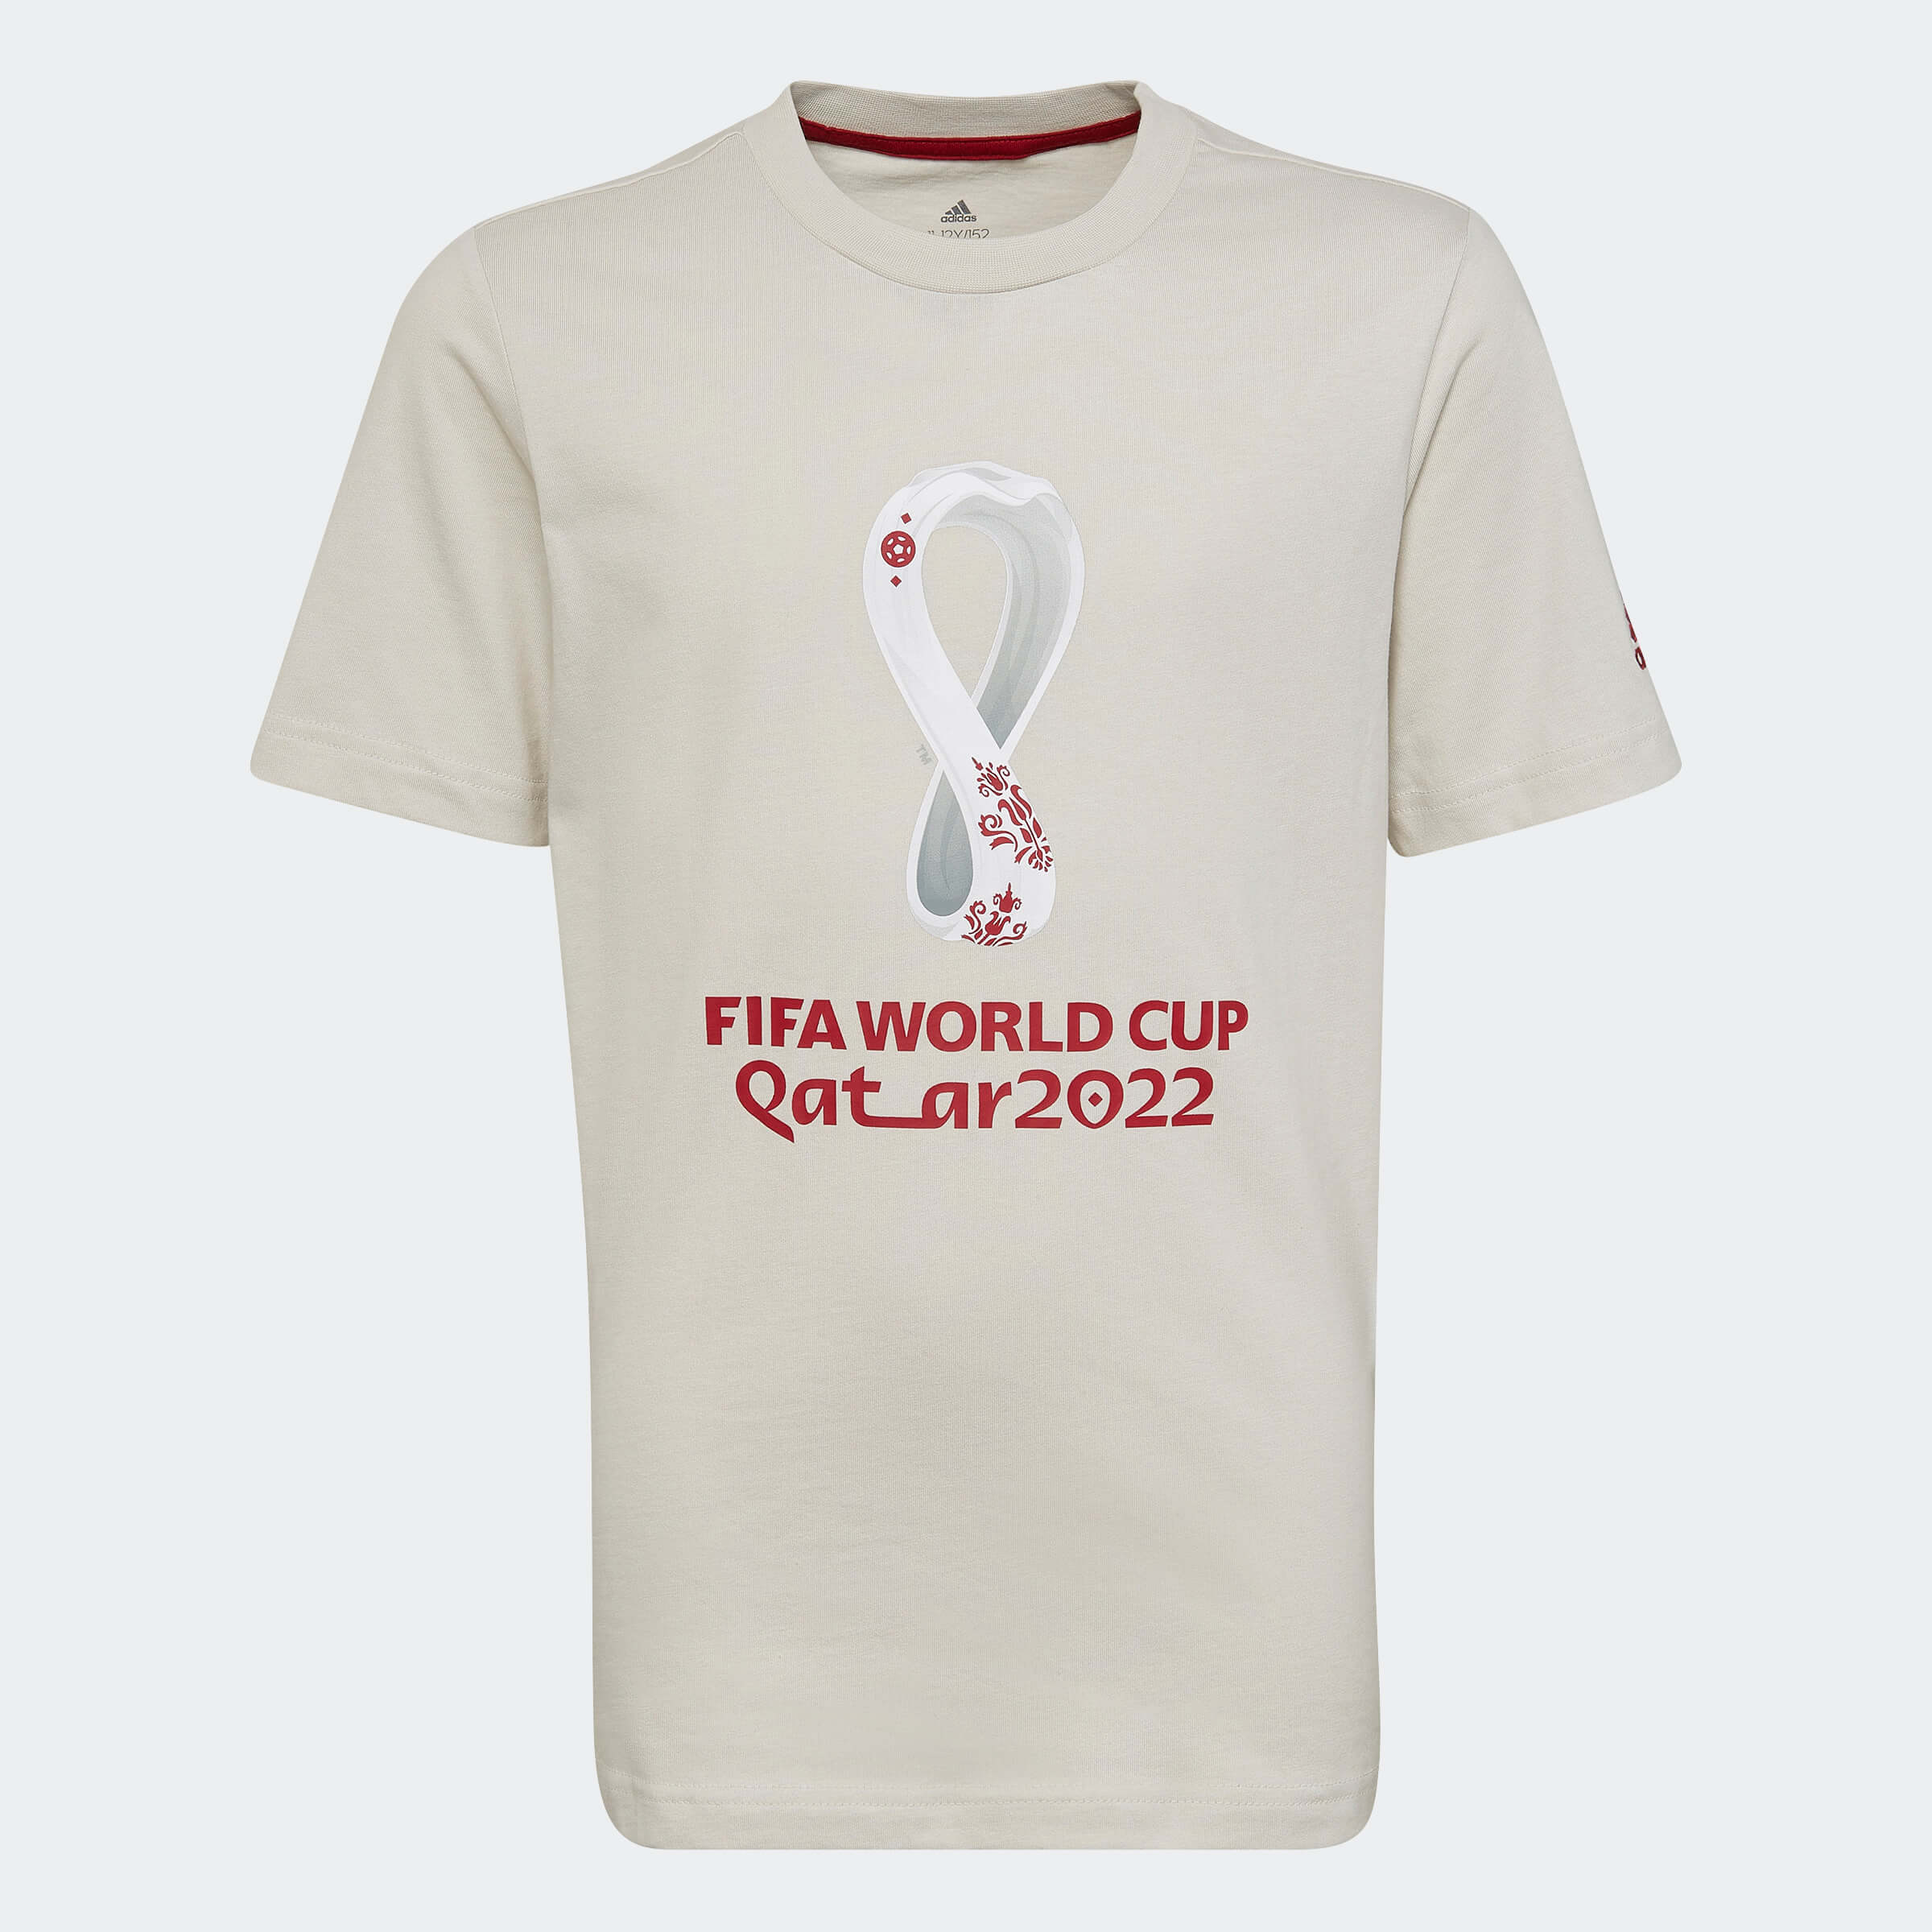 Adidas, Maglietta adidas per i giovani della Coppa del Mondo FIFA 2022